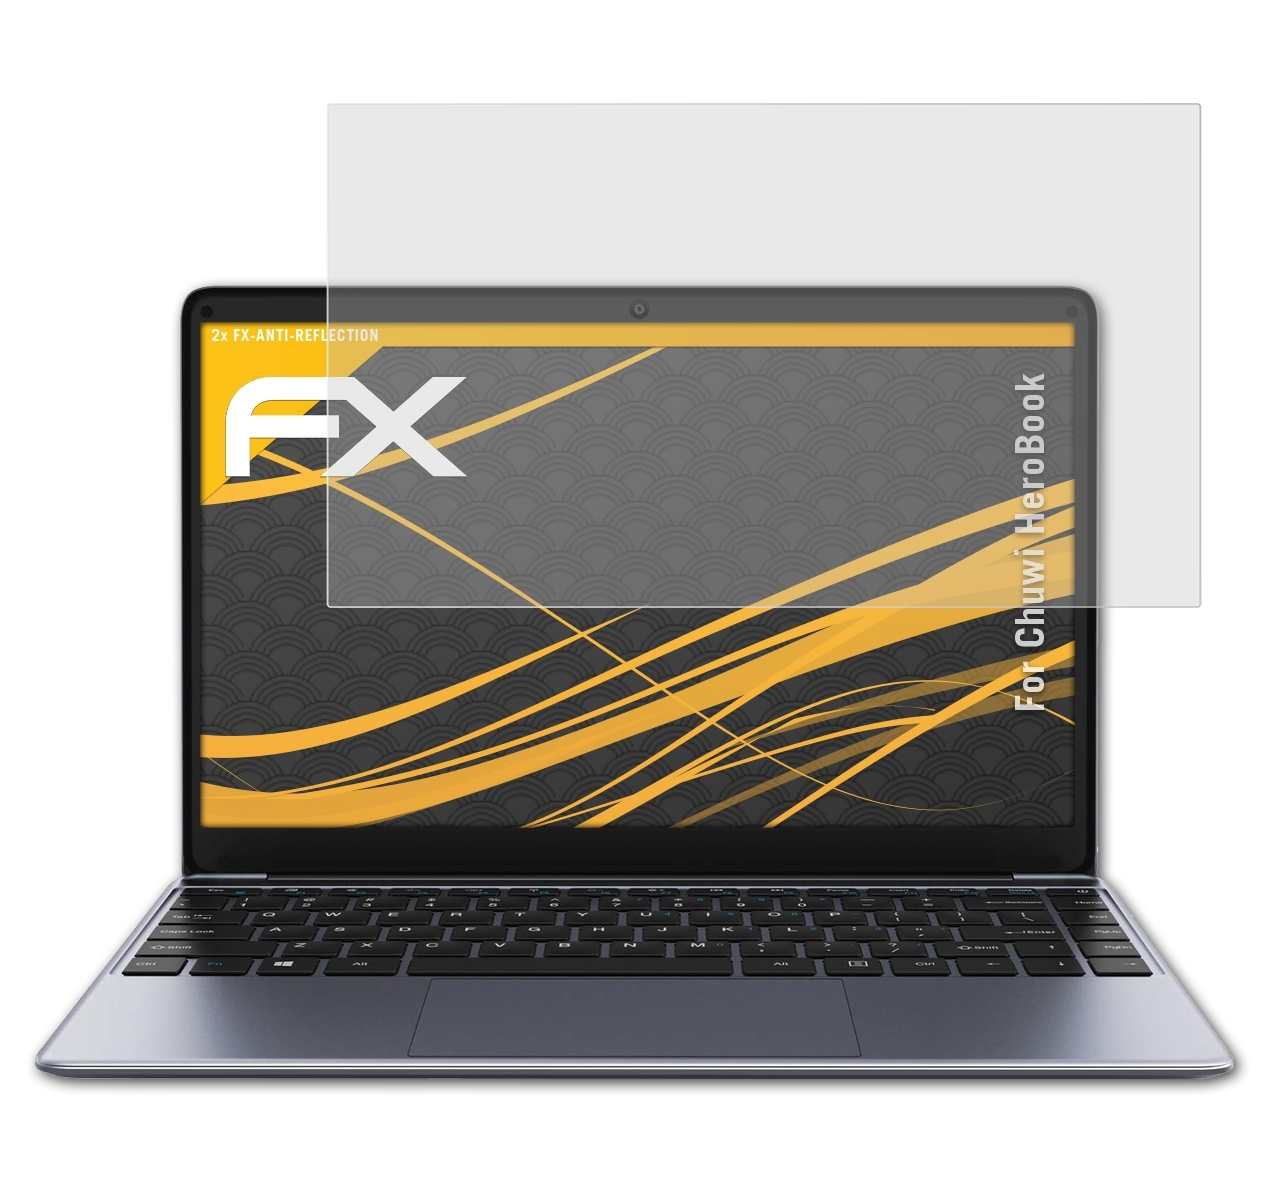 Displayschutz(für FX-Antireflex HeroBook) 2x ATFOLIX Chuwi